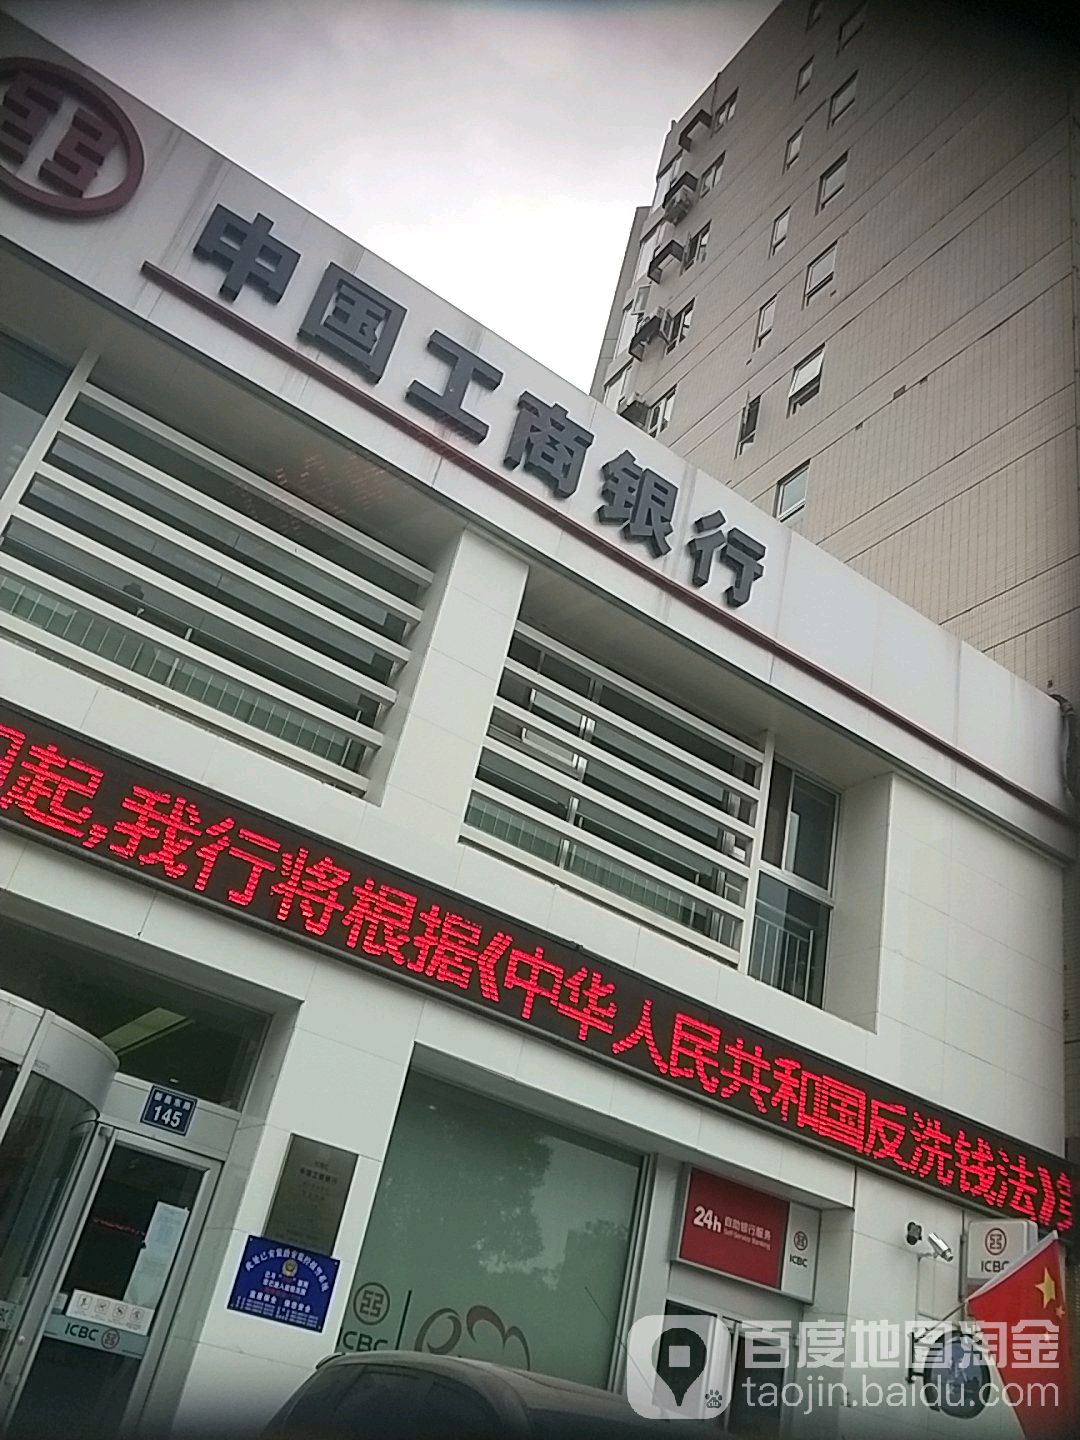 中國工商銀行24小時自助銀行(銀川民生支行)